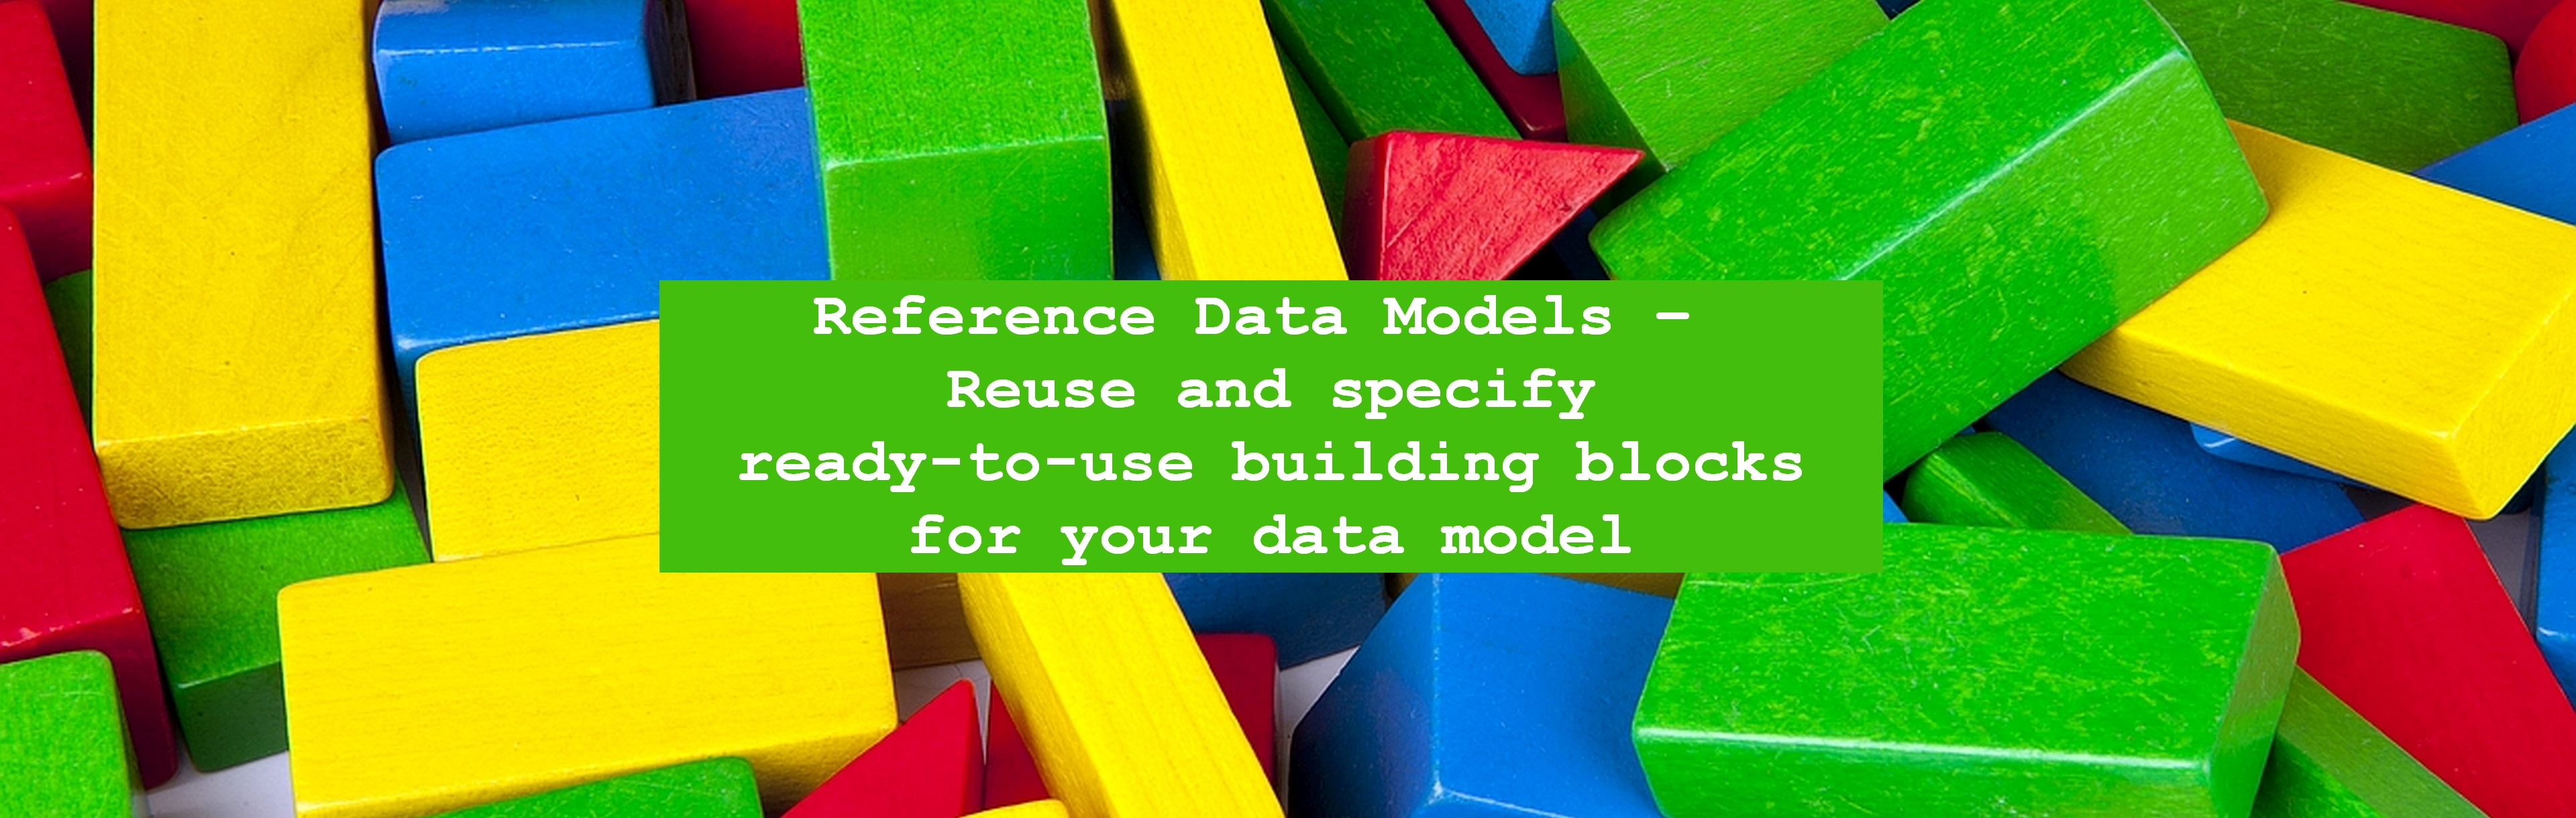 Das Bild zeigt den Text "Reference Data Models – Reuse and specify ready-to-use building blocks for your data model" in einem grünen Kasten vor bunten Bauklötzen aus Holz